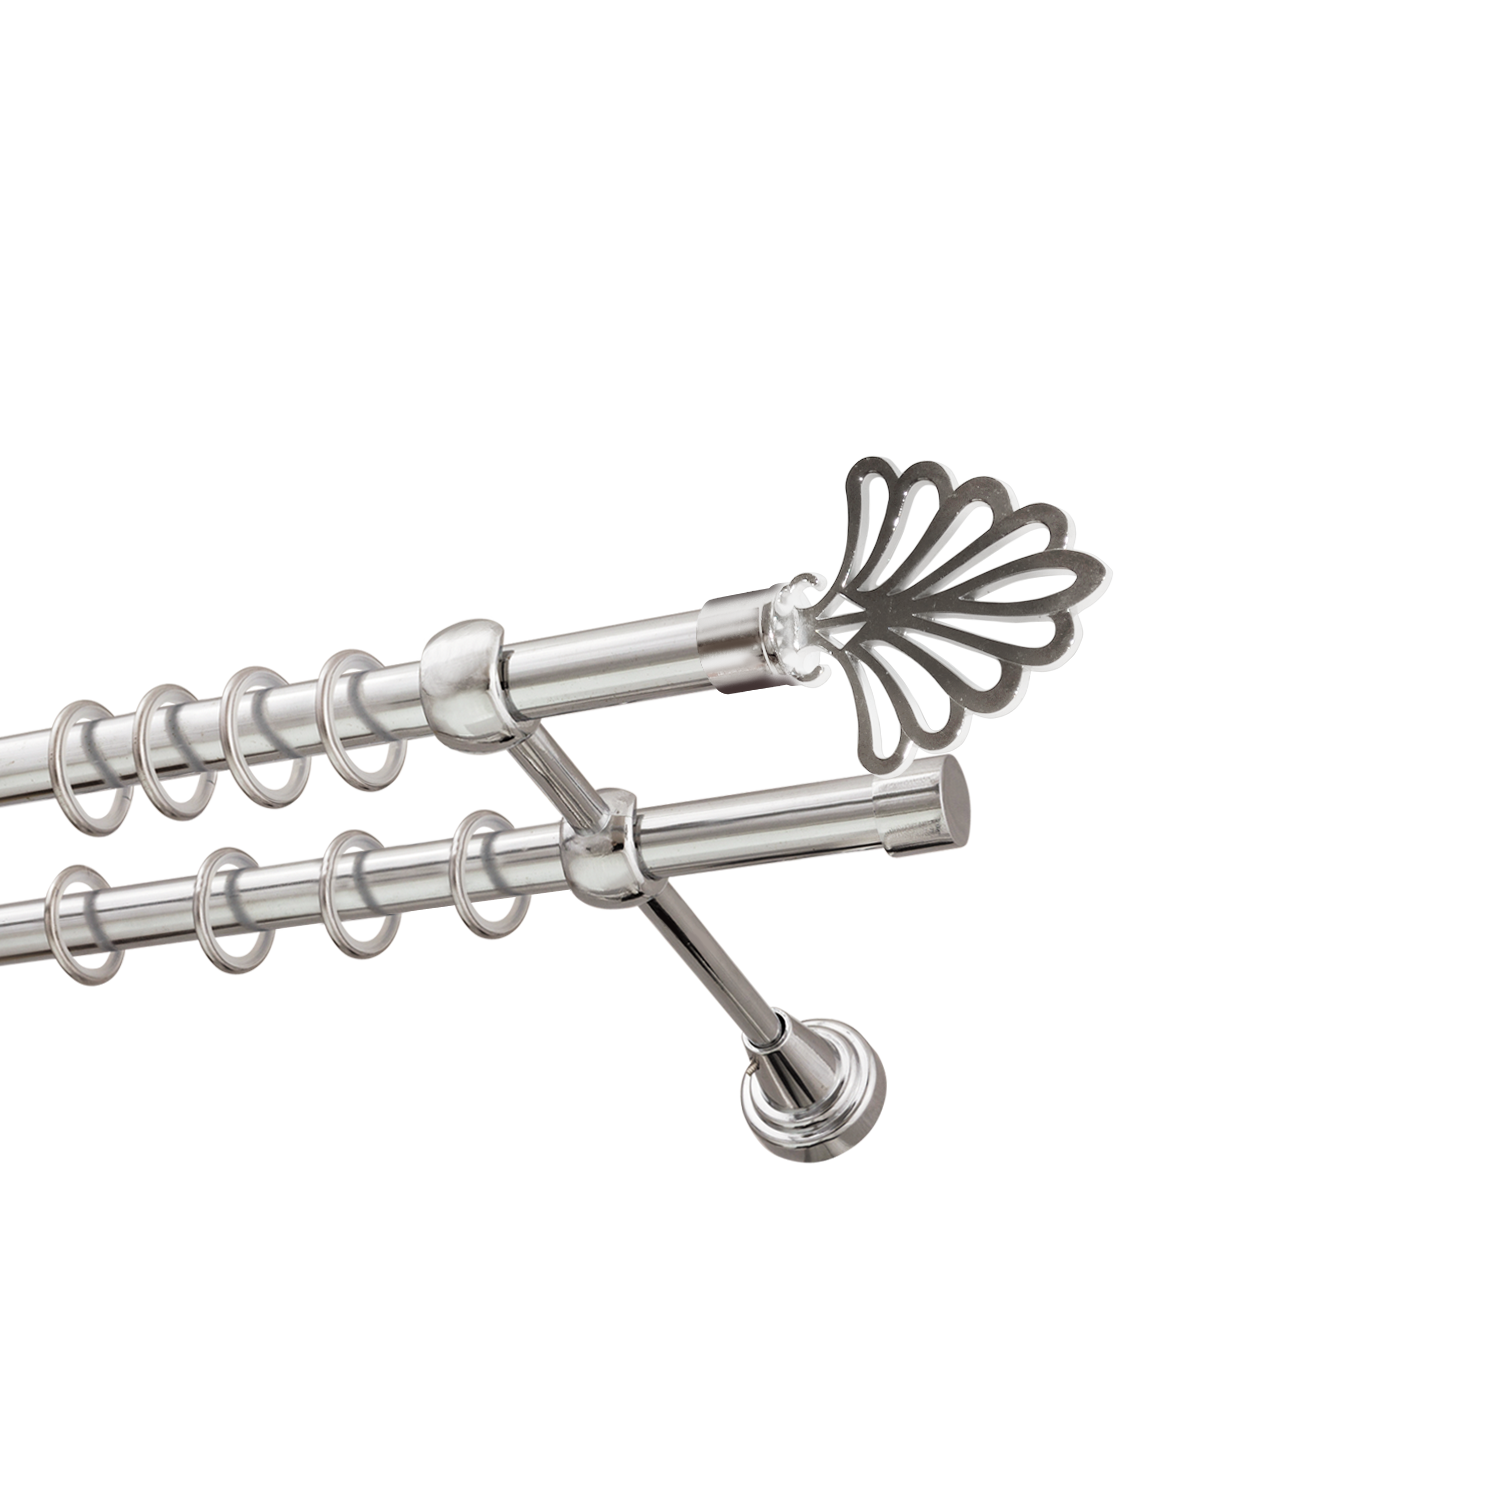 Металлический карниз для штор Бутик, двухрядный 16/16 мм, серебро, гладкая штанга, длина 240 см - фото Wikidecor.ru